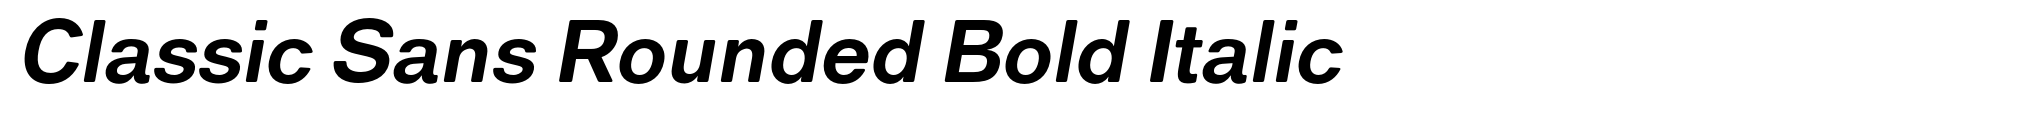 Classic Sans Rounded Bold Italic image